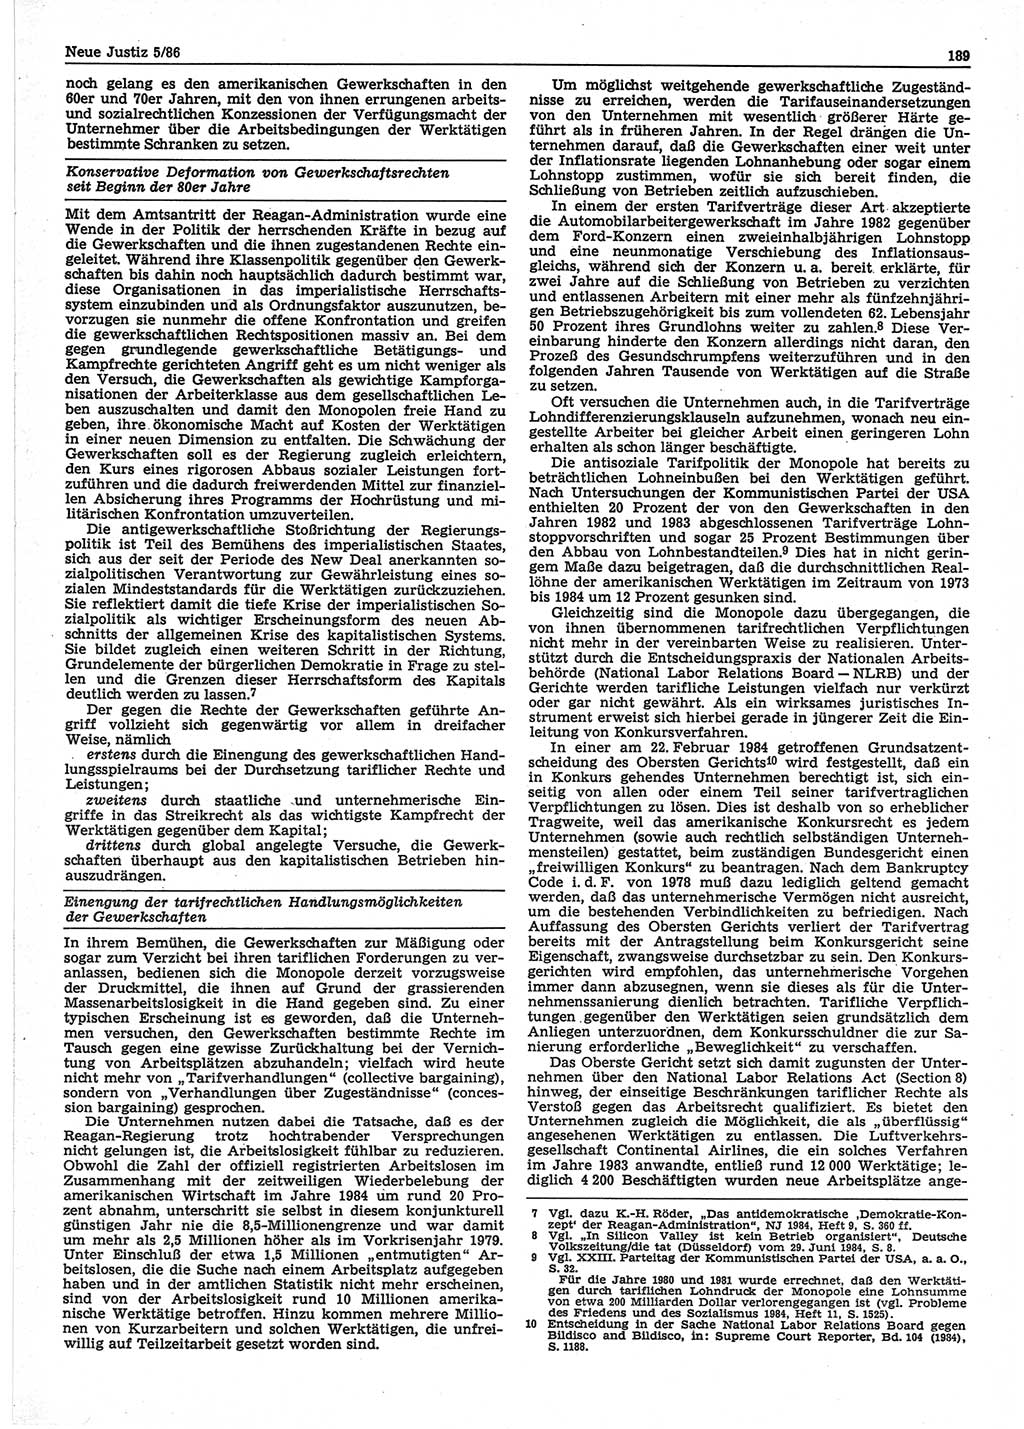 Neue Justiz (NJ), Zeitschrift für sozialistisches Recht und Gesetzlichkeit [Deutsche Demokratische Republik (DDR)], 40. Jahrgang 1986, Seite 189 (NJ DDR 1986, S. 189)